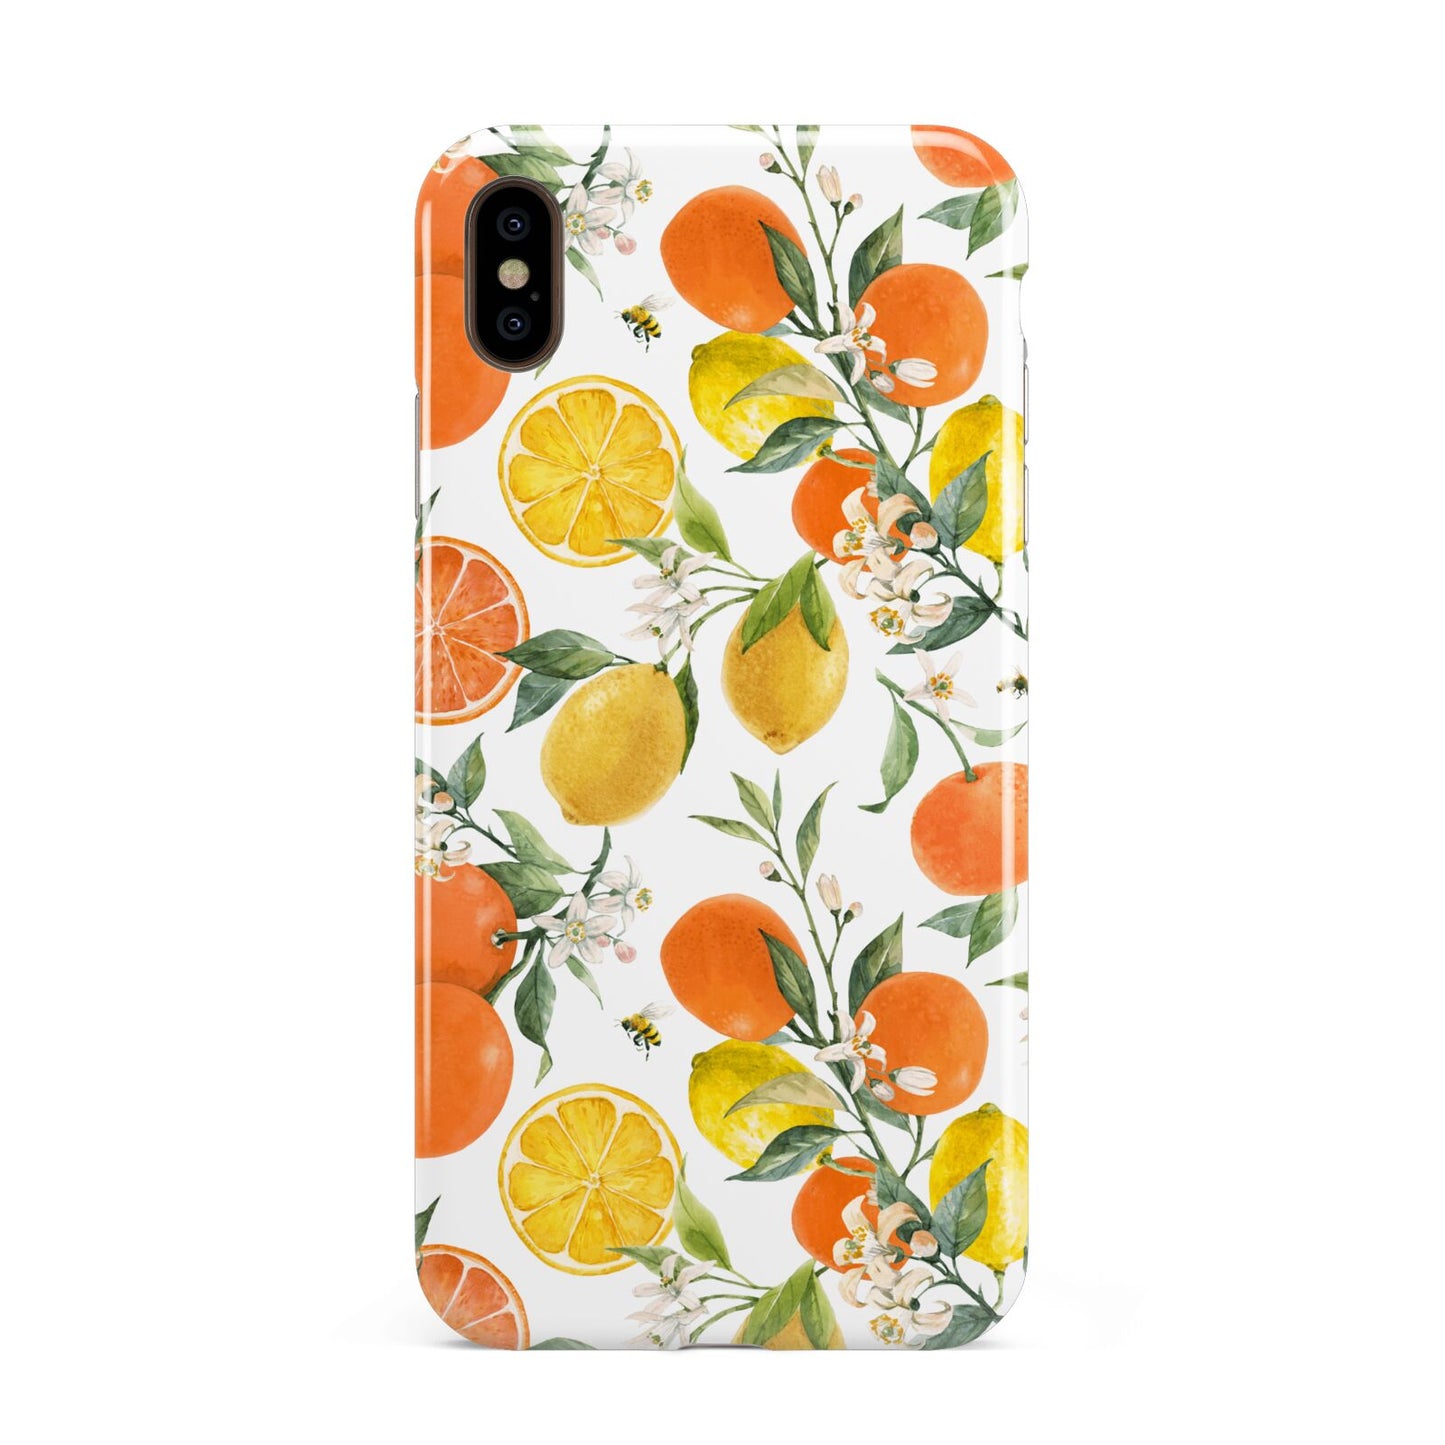 Lemons and Oranges Apple iPhone Xs Max 3D Tough Case